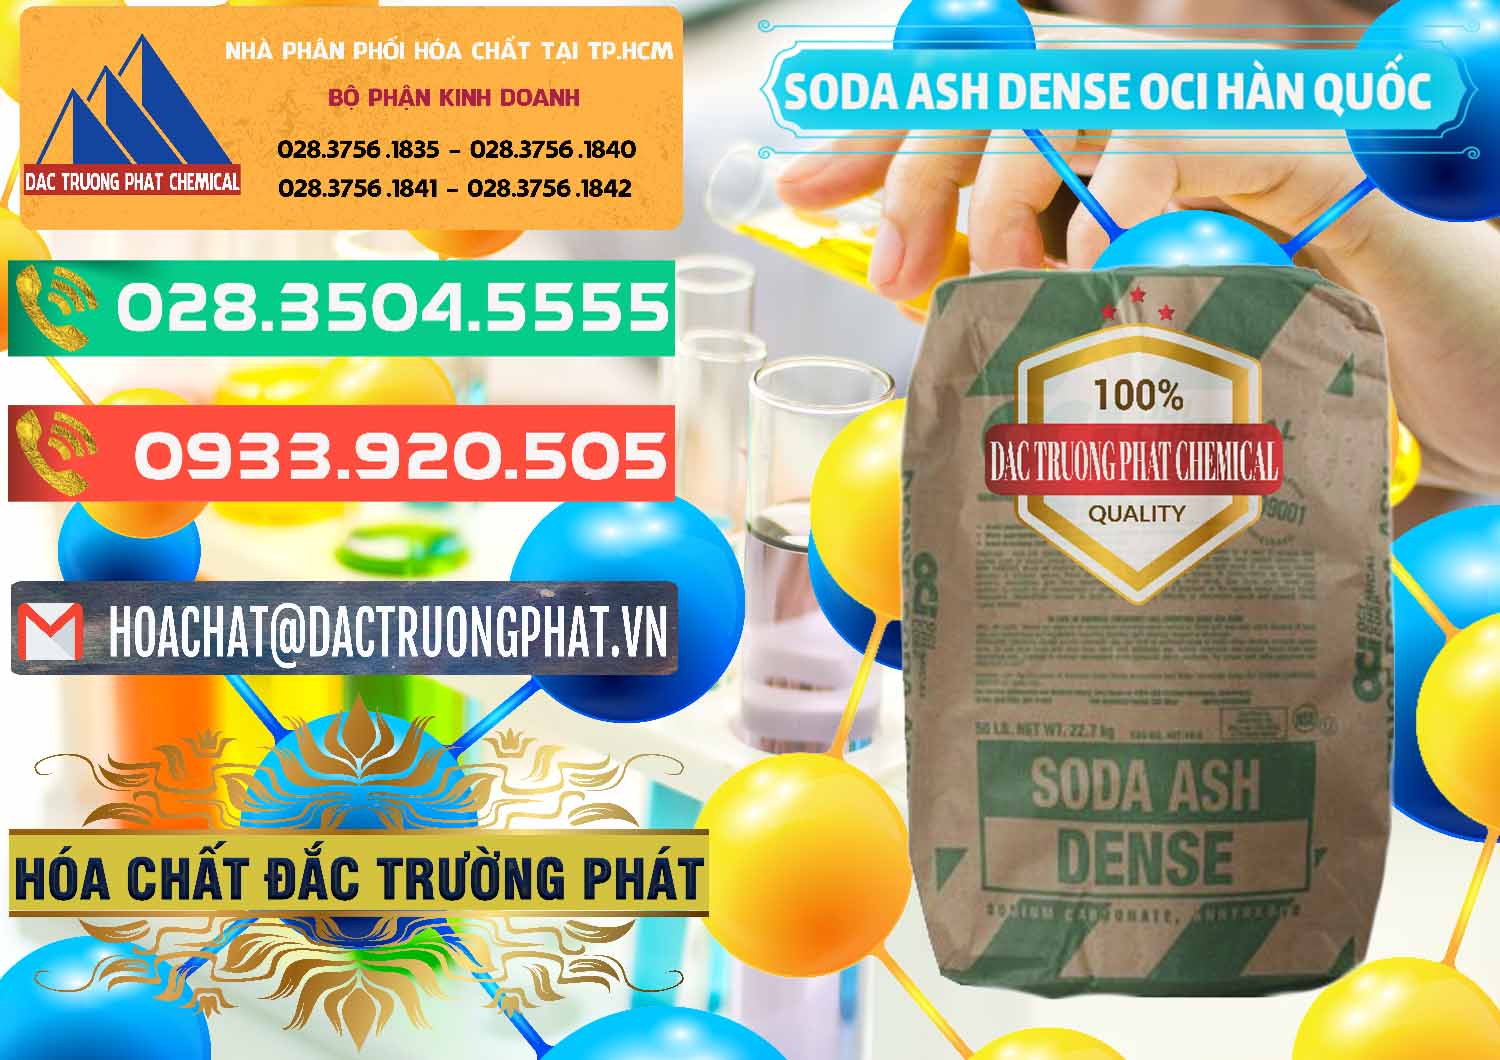 Đơn vị chuyên bán & phân phối Soda Ash Dense - NA2CO3 OCI Hàn Quốc Korea - 0338 - Nơi chuyên cung cấp _ kinh doanh hóa chất tại TP.HCM - congtyhoachat.com.vn